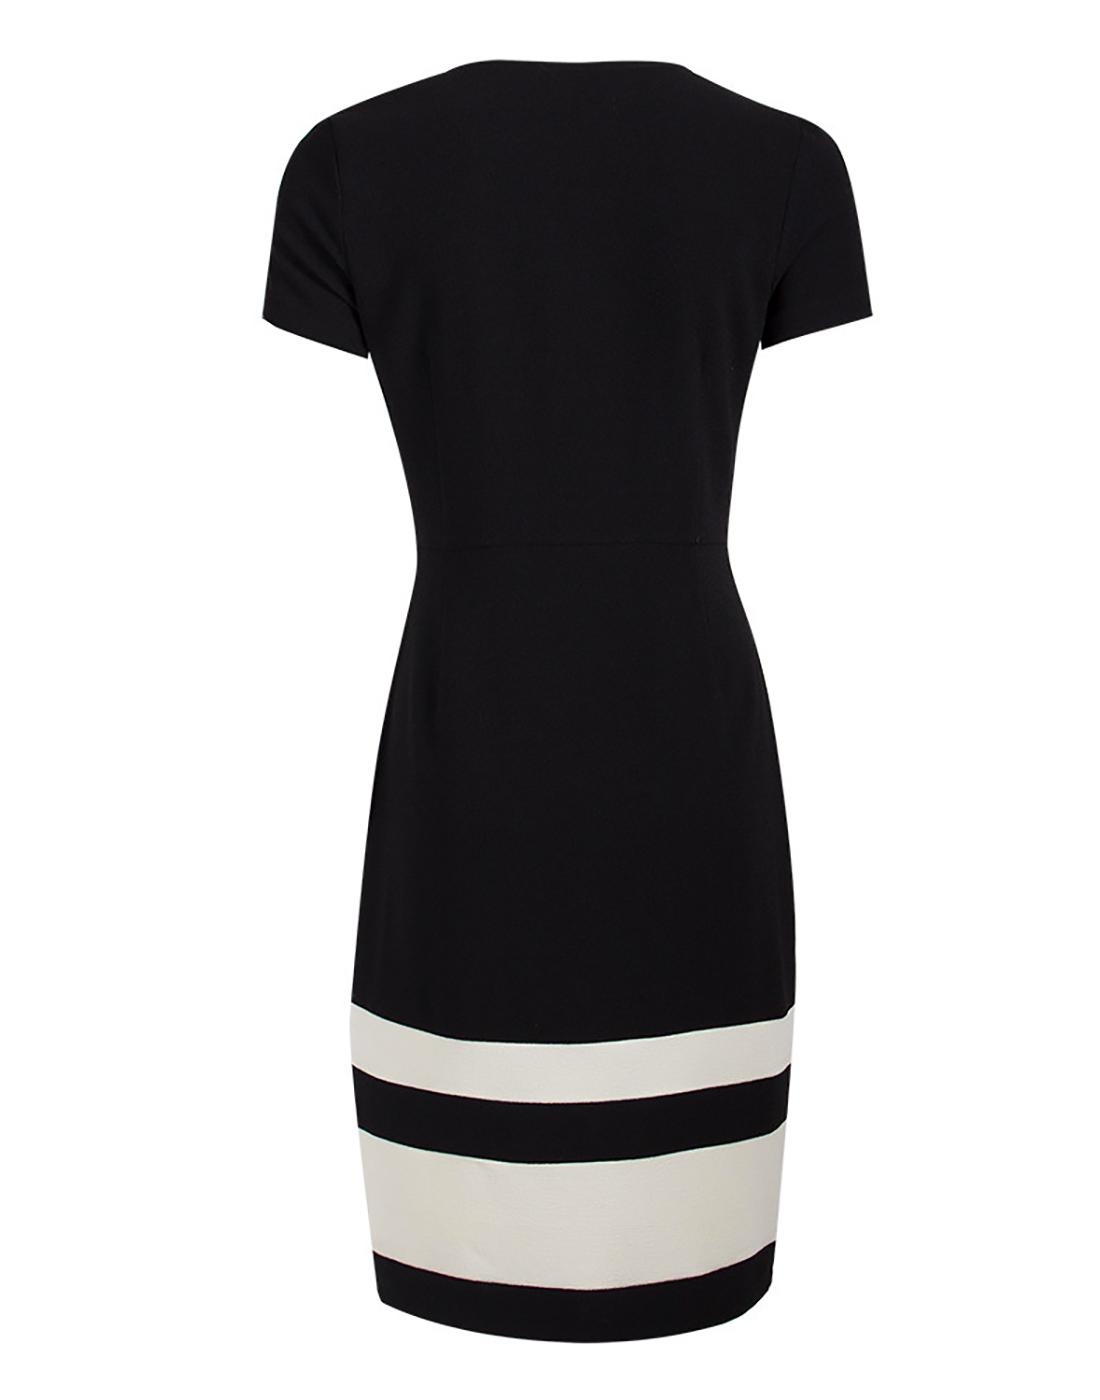 FEVER Winona Retro 60s Mod Pencil Dress in Black/Cream